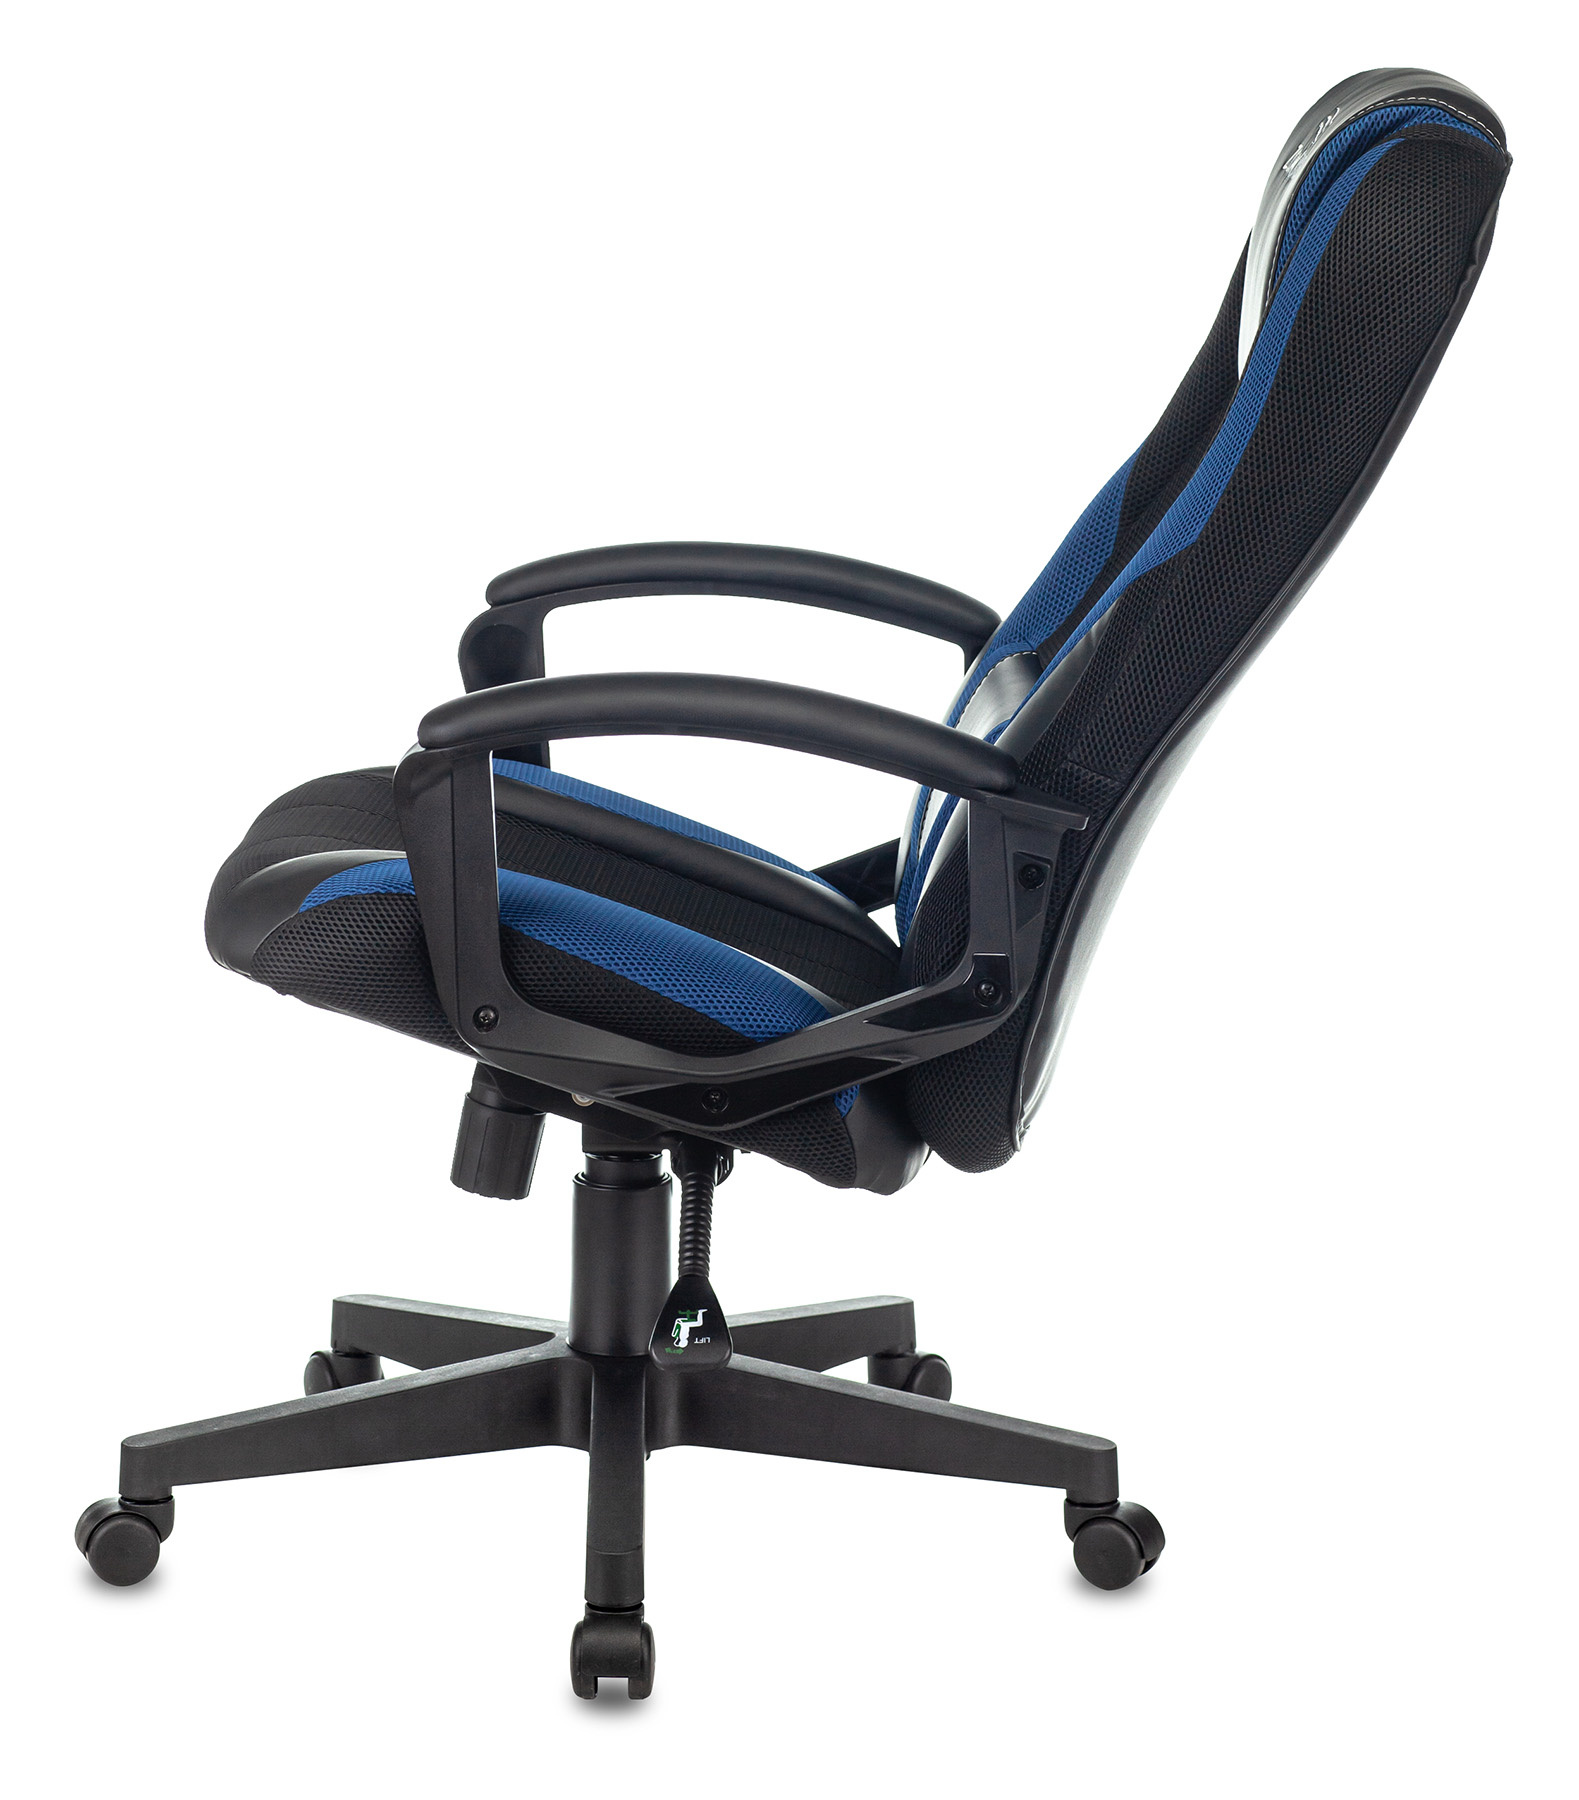 Кресло игровое Zombie 9 черный/синий текстиль/эко.кожа крестов. пластик